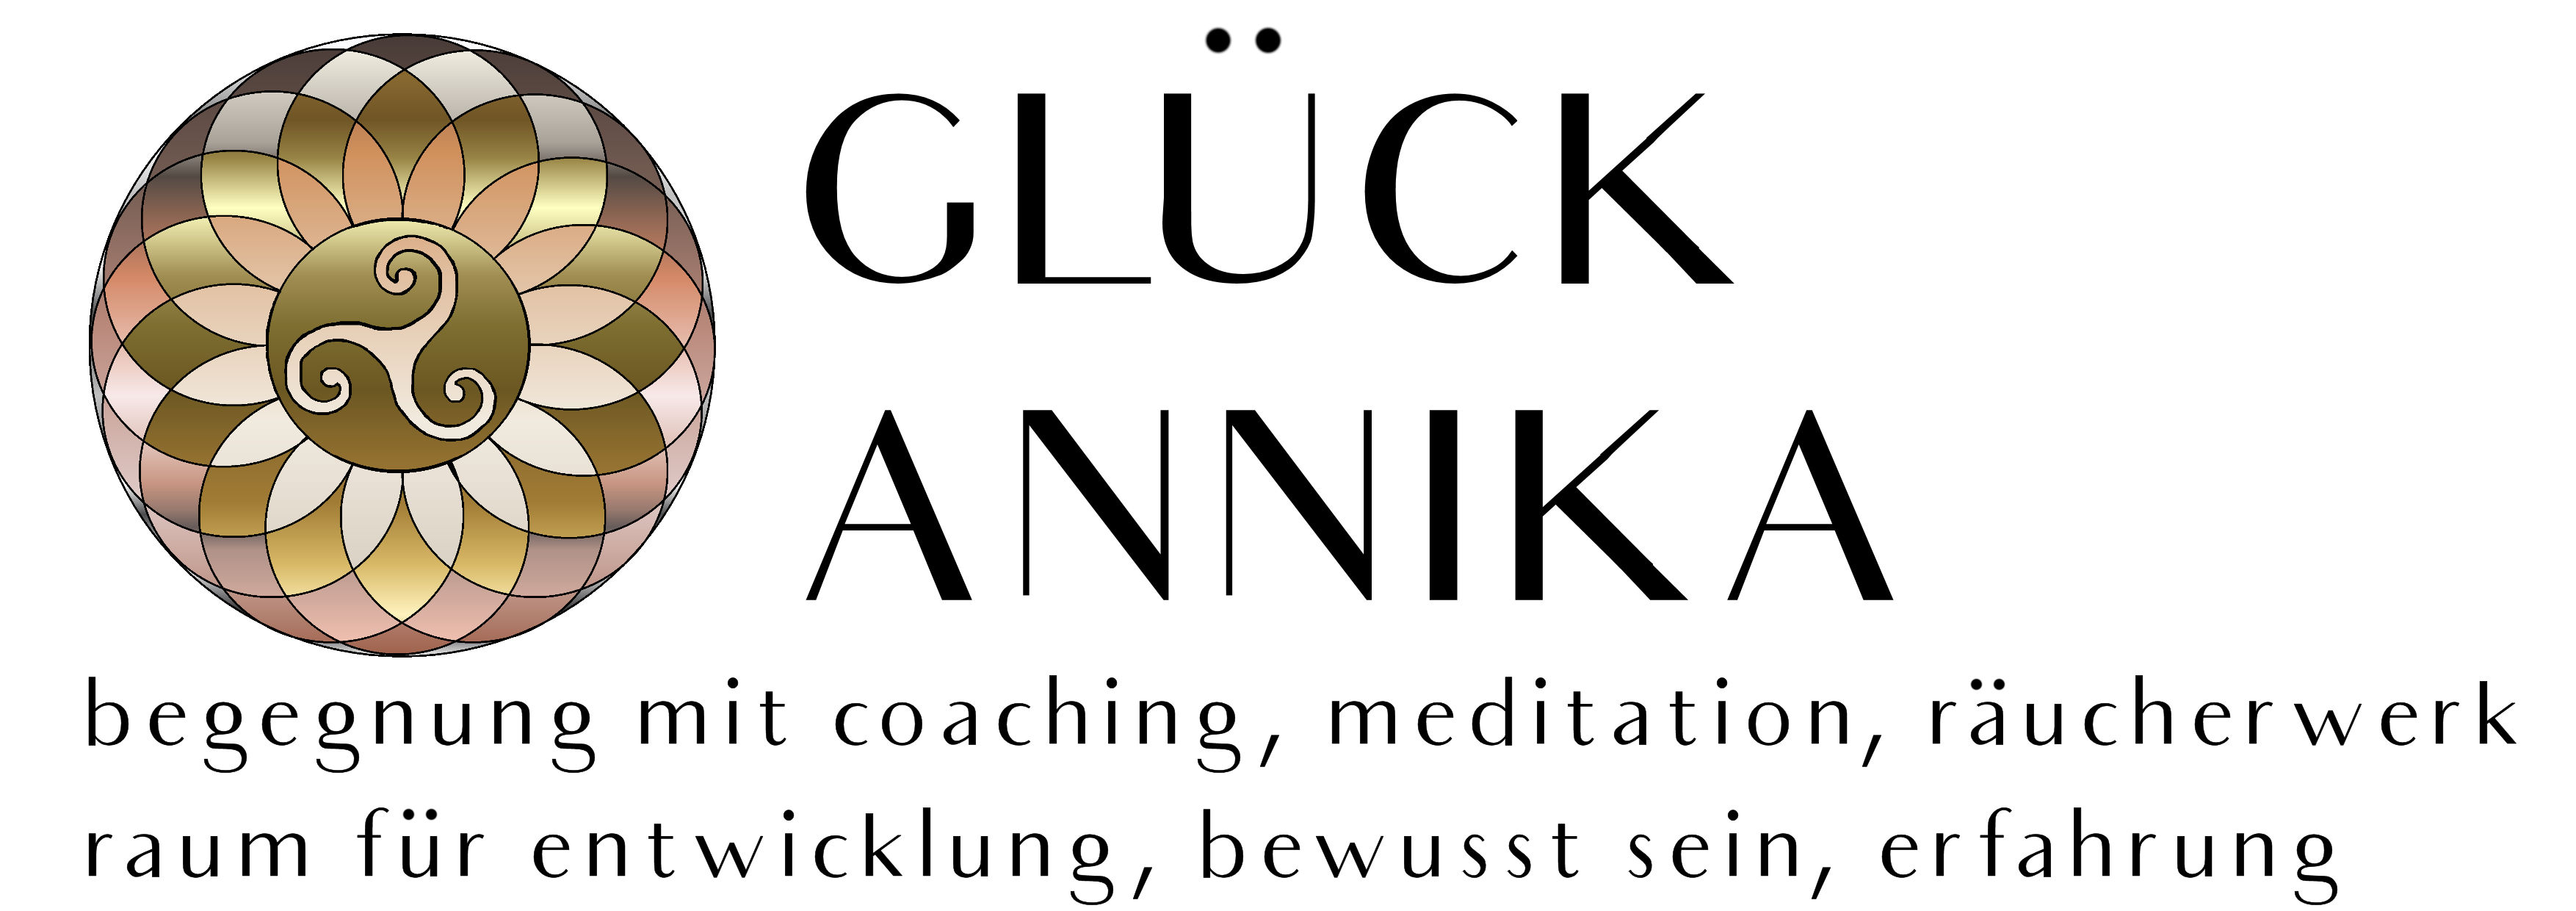 Annika Glück logo